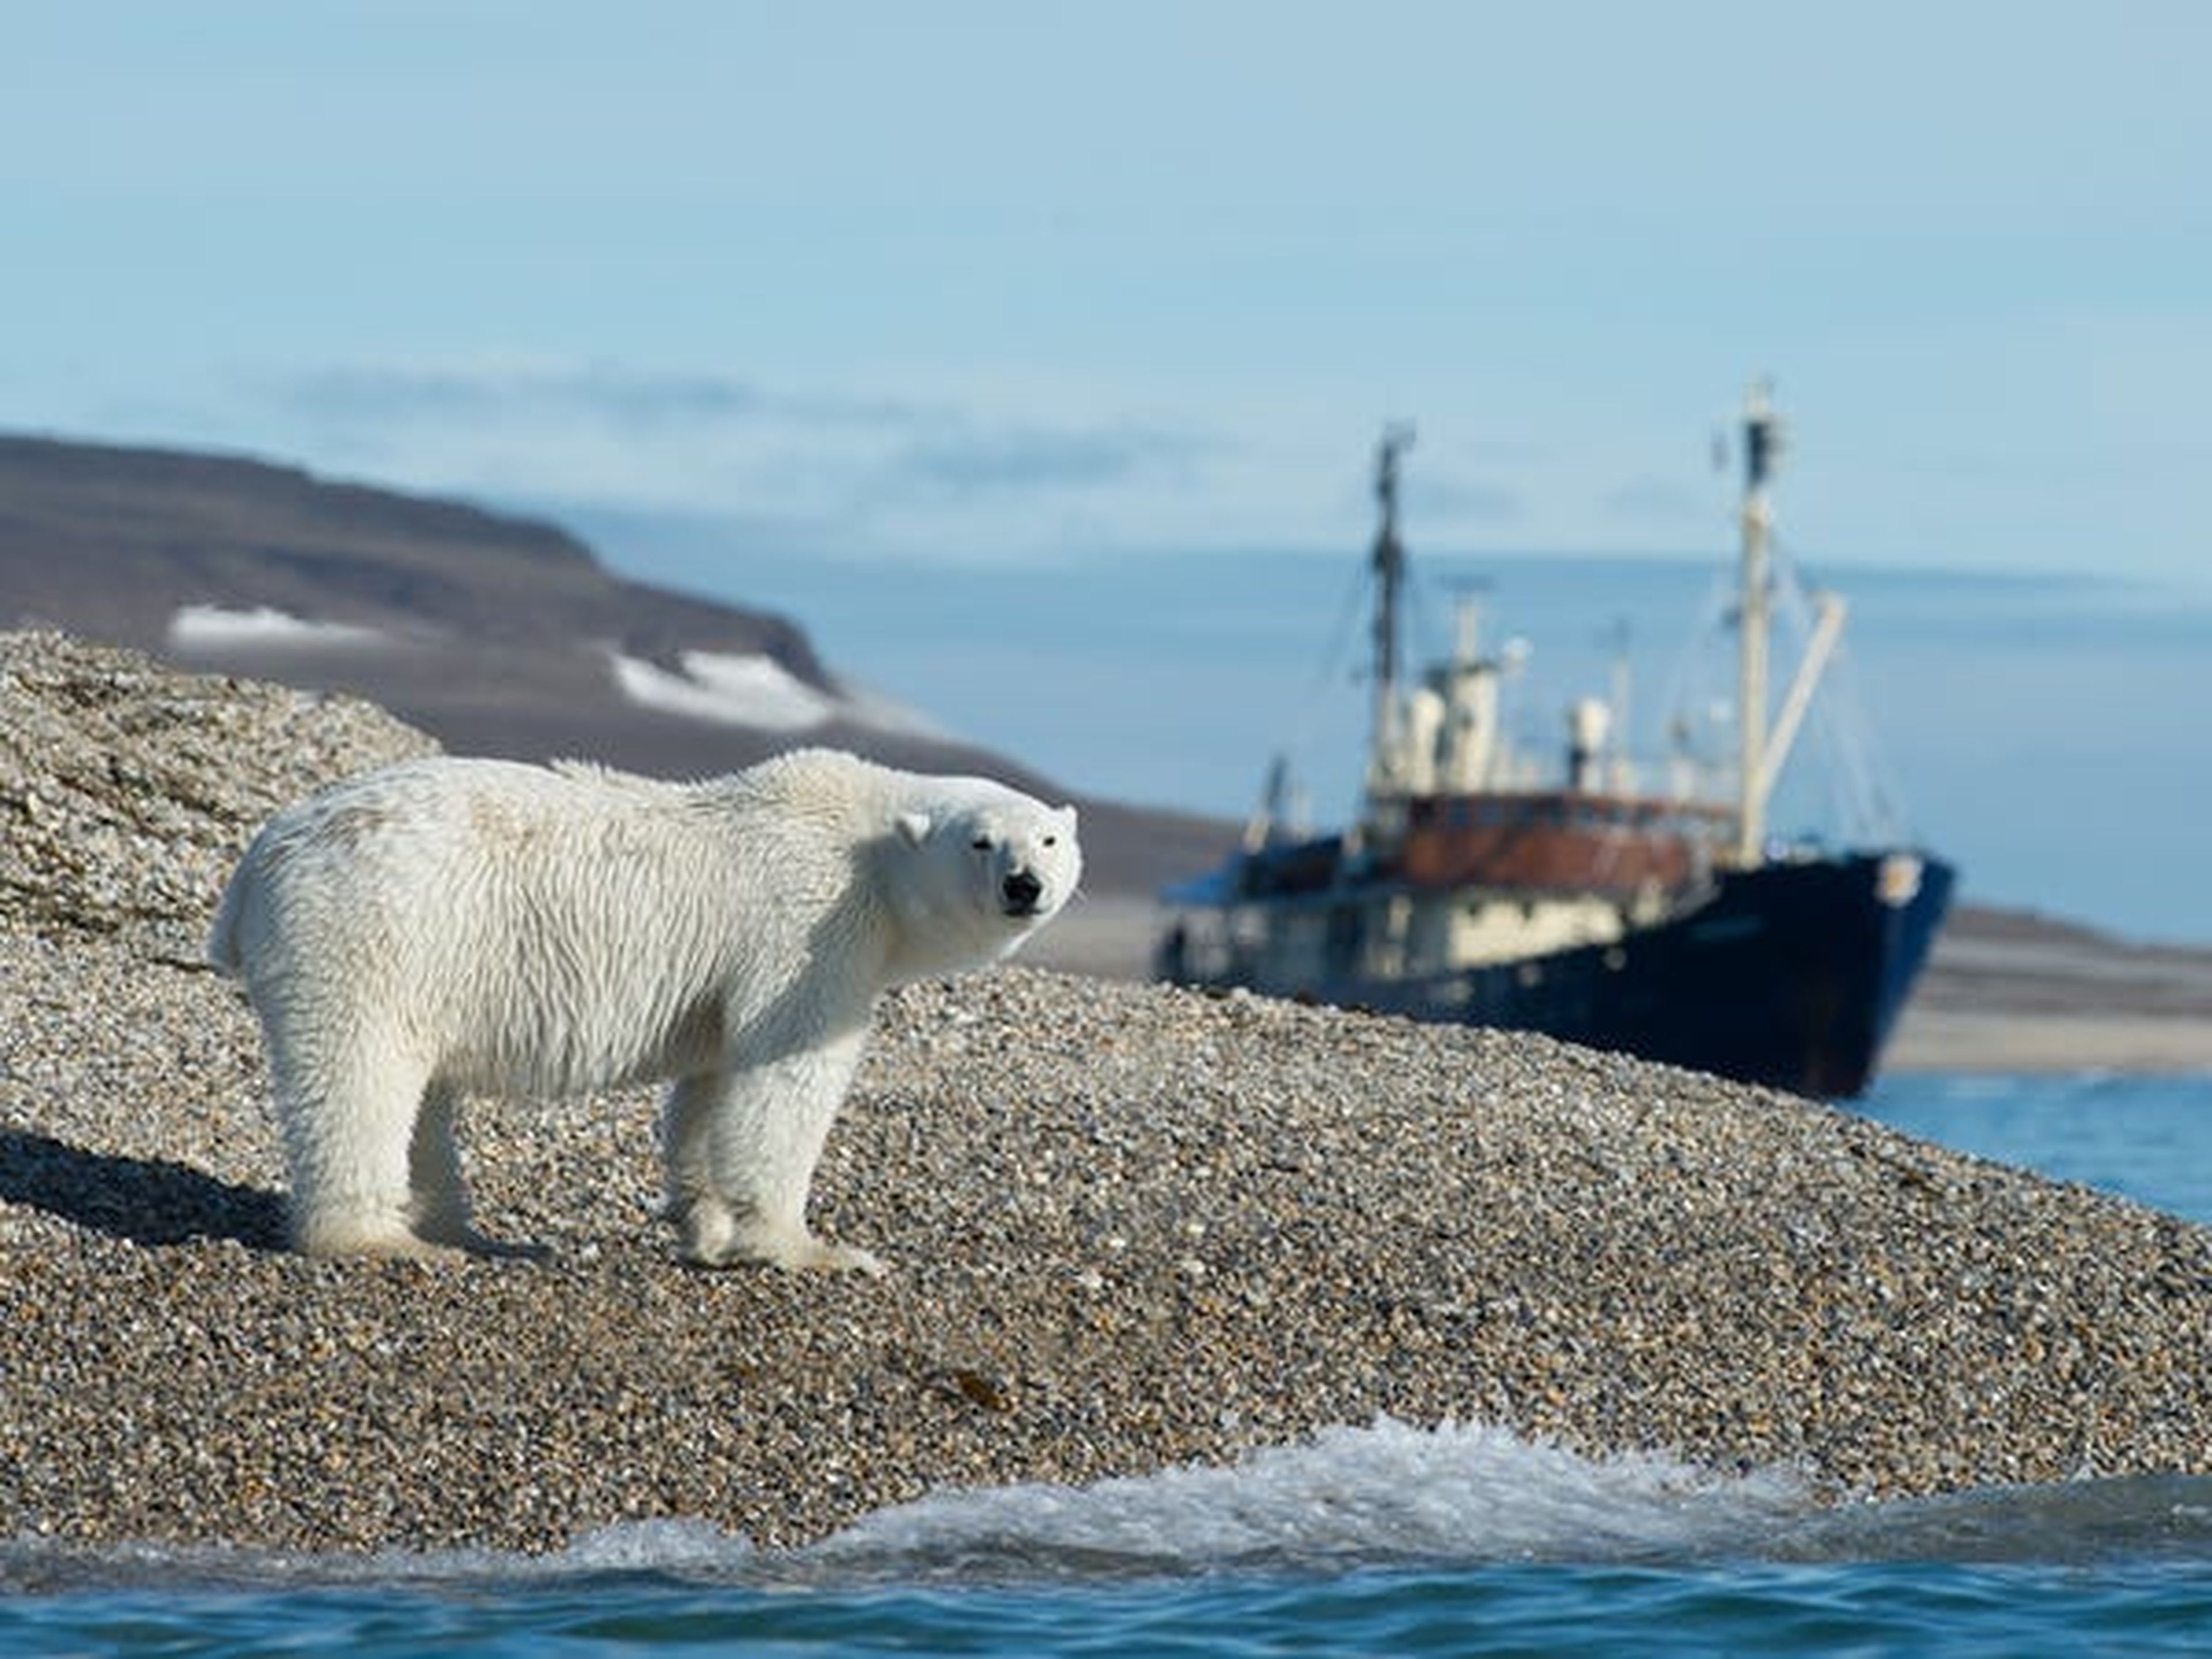 Bromas aparte, los osos polares representan una amenaza muy real para la población de Longyearbyen. Aunque los osos viven principalmente al norte de Longyearbyen en la capa de hielo, ocasionalmente pueden aventurarse en la ciudad en busca de comida.